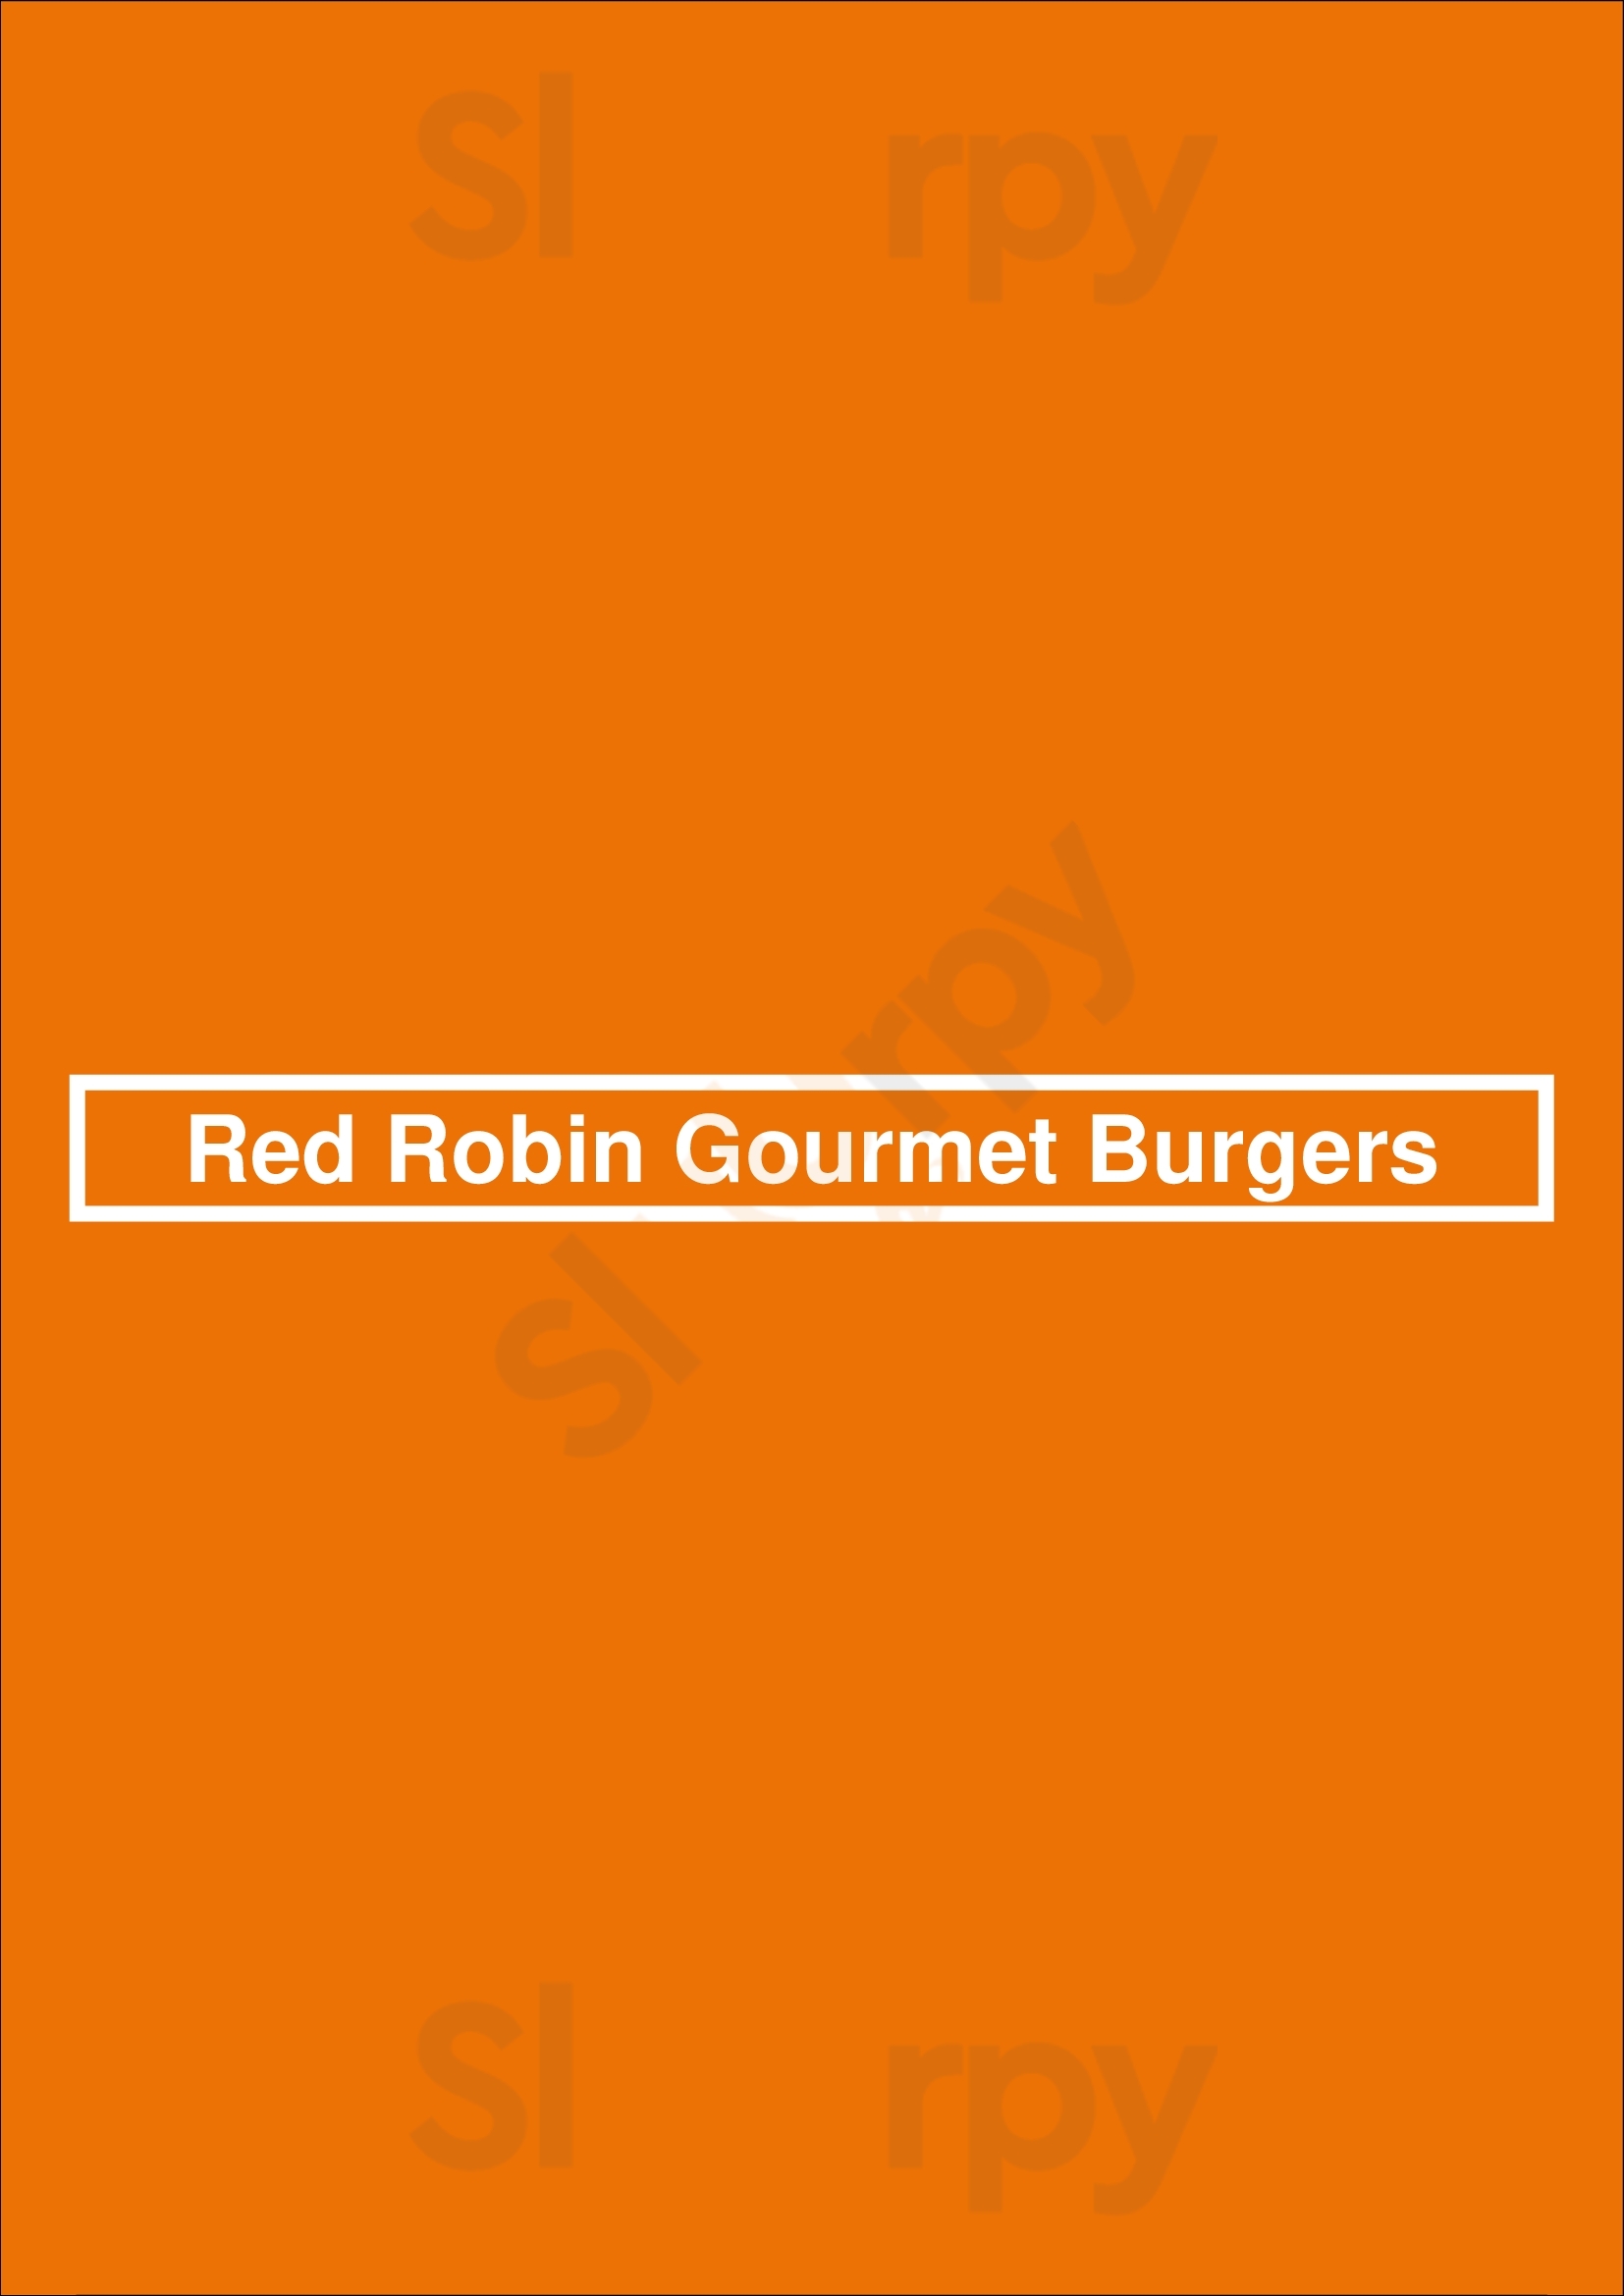 Red Robin Gourmet Burgers Tampa Menu - 1